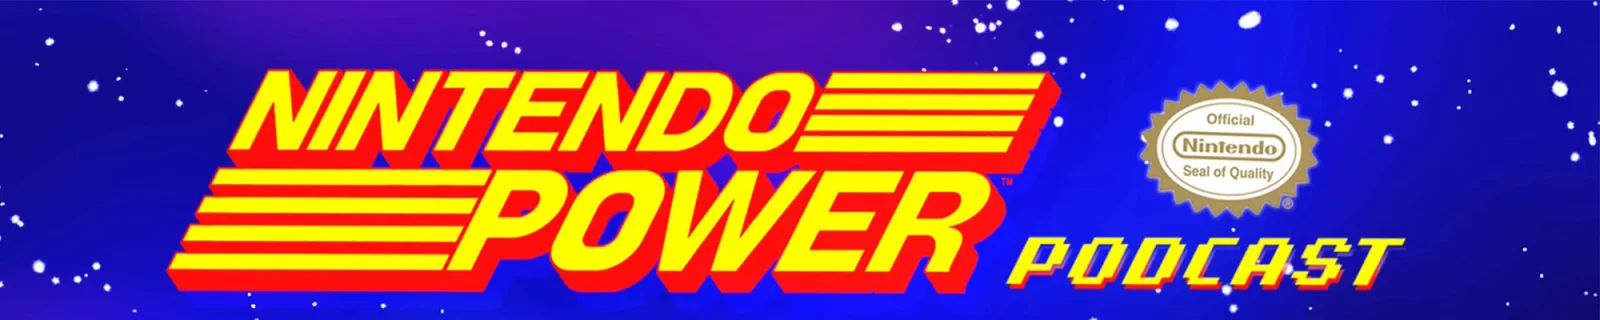 欧美玩家喜闻乐见的《大乱斗》|《Nintendo Power》播客Ep.8